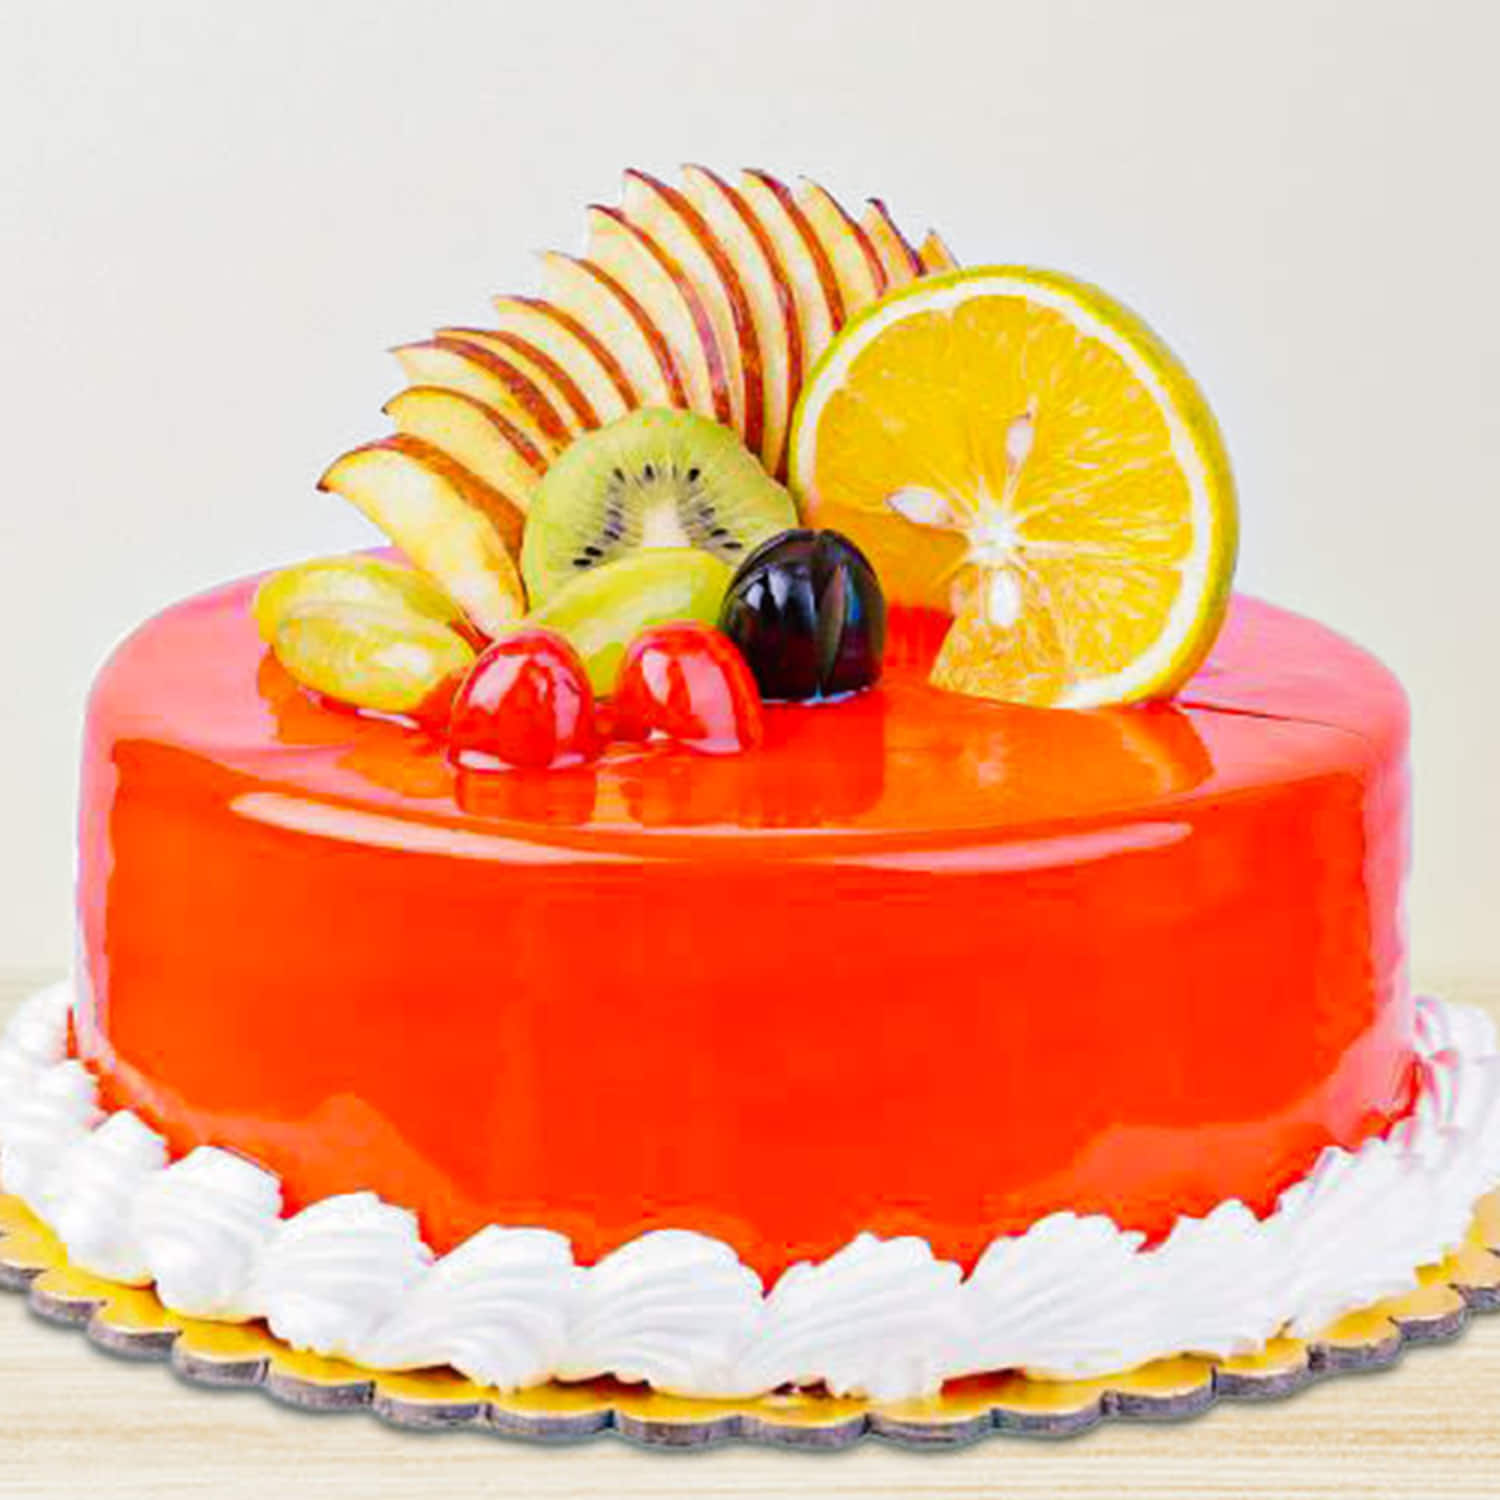 Fresh Fruit Cake Decorating Ideas- Mixed Fruit Cake Decoration Ideas | Birthday  Fruit Cake Design | - YouTube